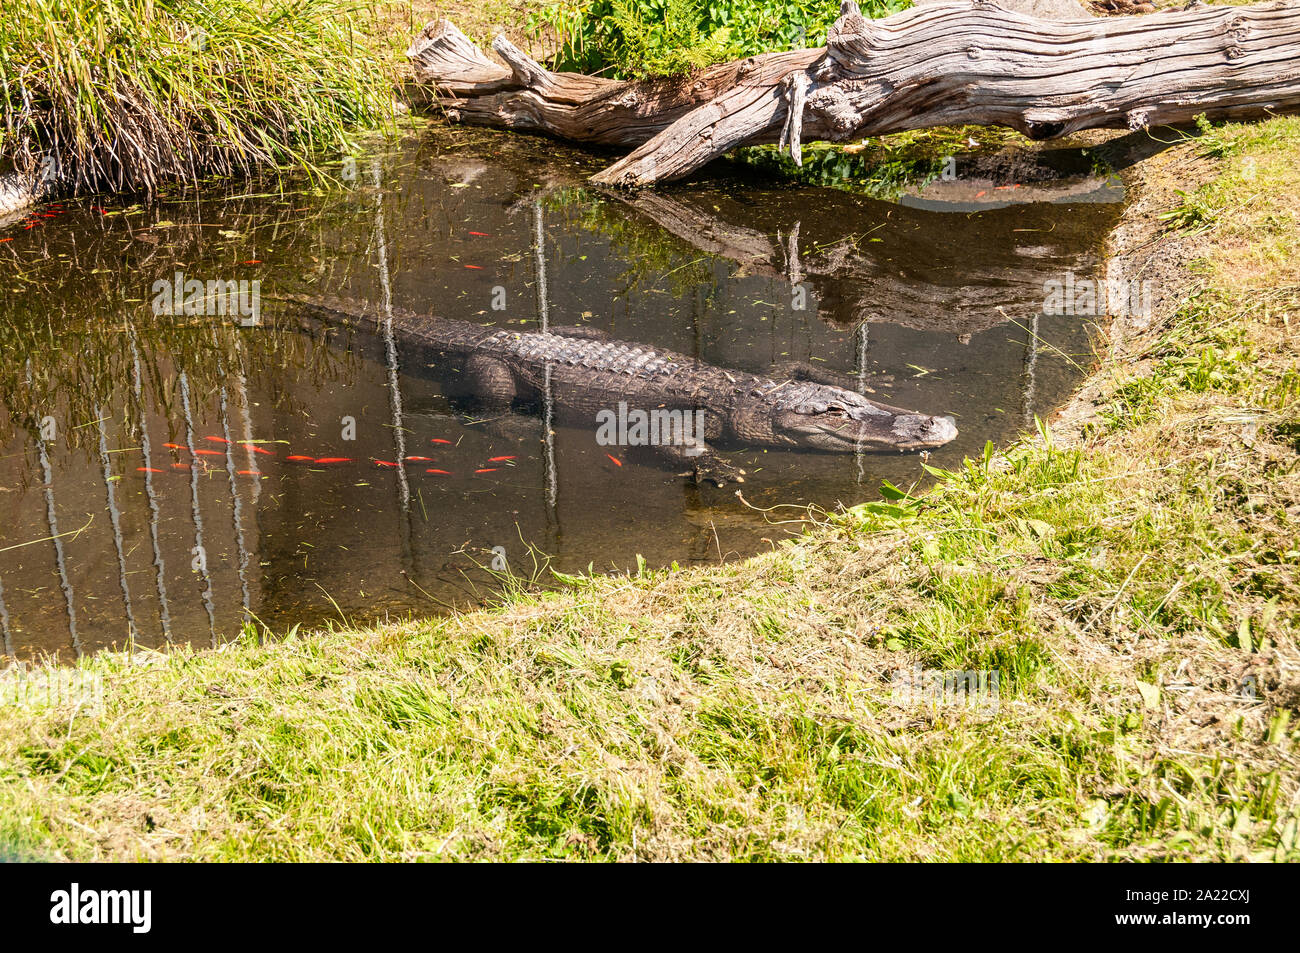 Un alligatore poggia sul suo lato inferiore, arti sparsi, in corrispondenza del bordo poco profonda di un naturale cercando piscina, metà fuori dall'acqua, assorbendo la luce del sole Foto Stock